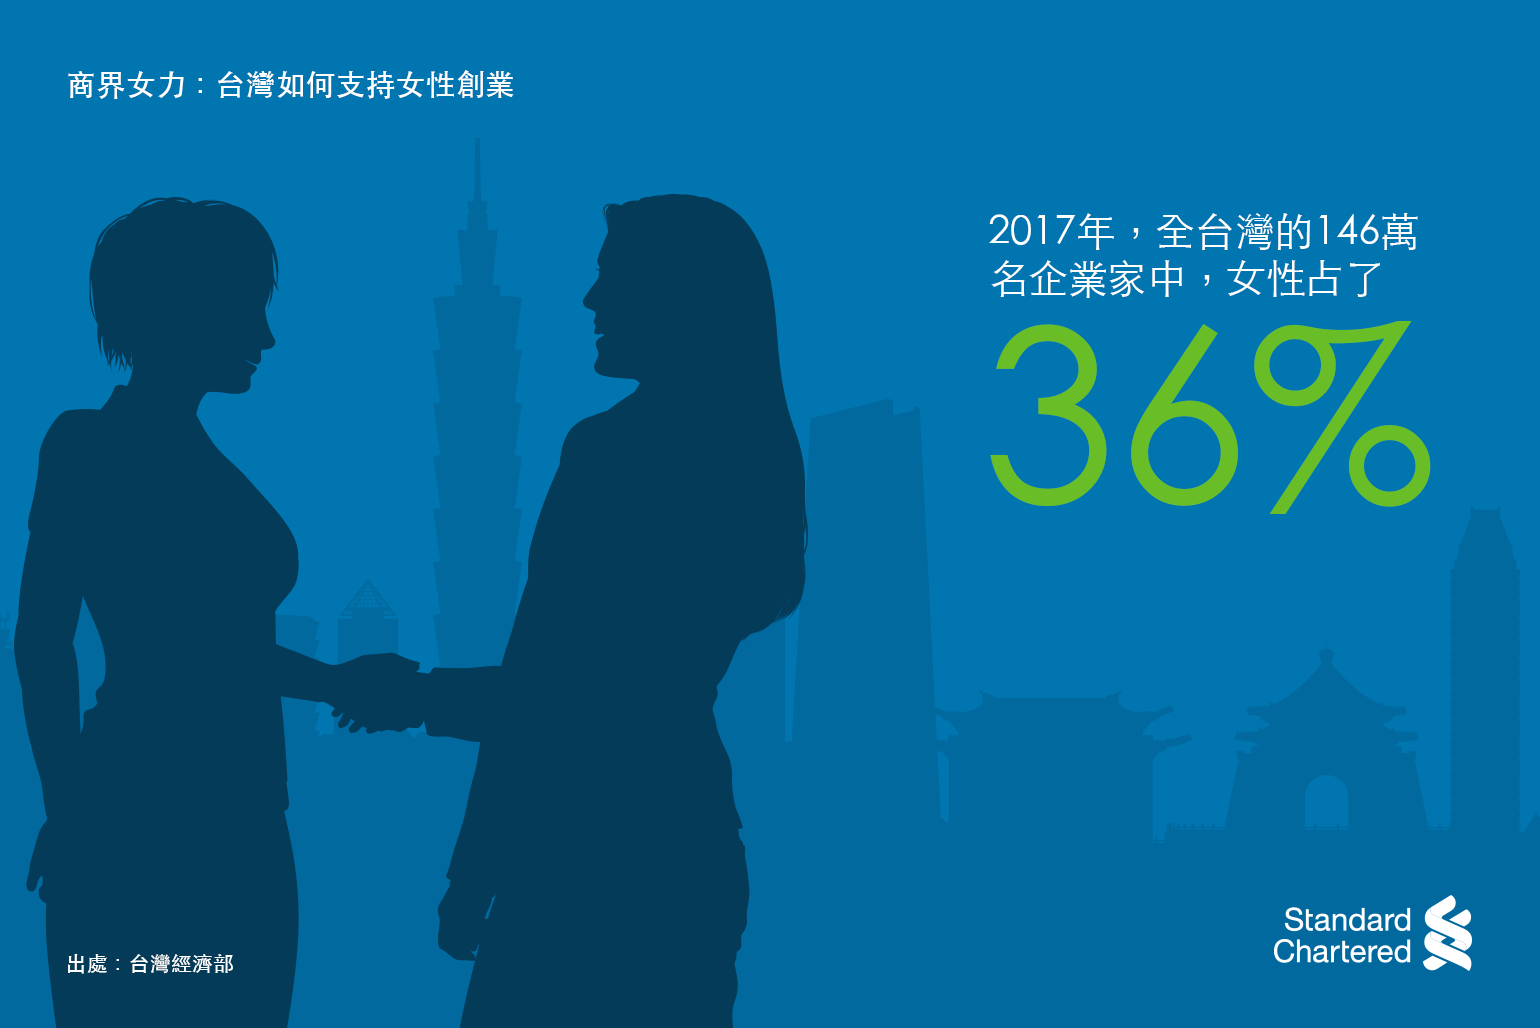 36% of 1.46 million entrepreneurs in Taiwan were female in 2017